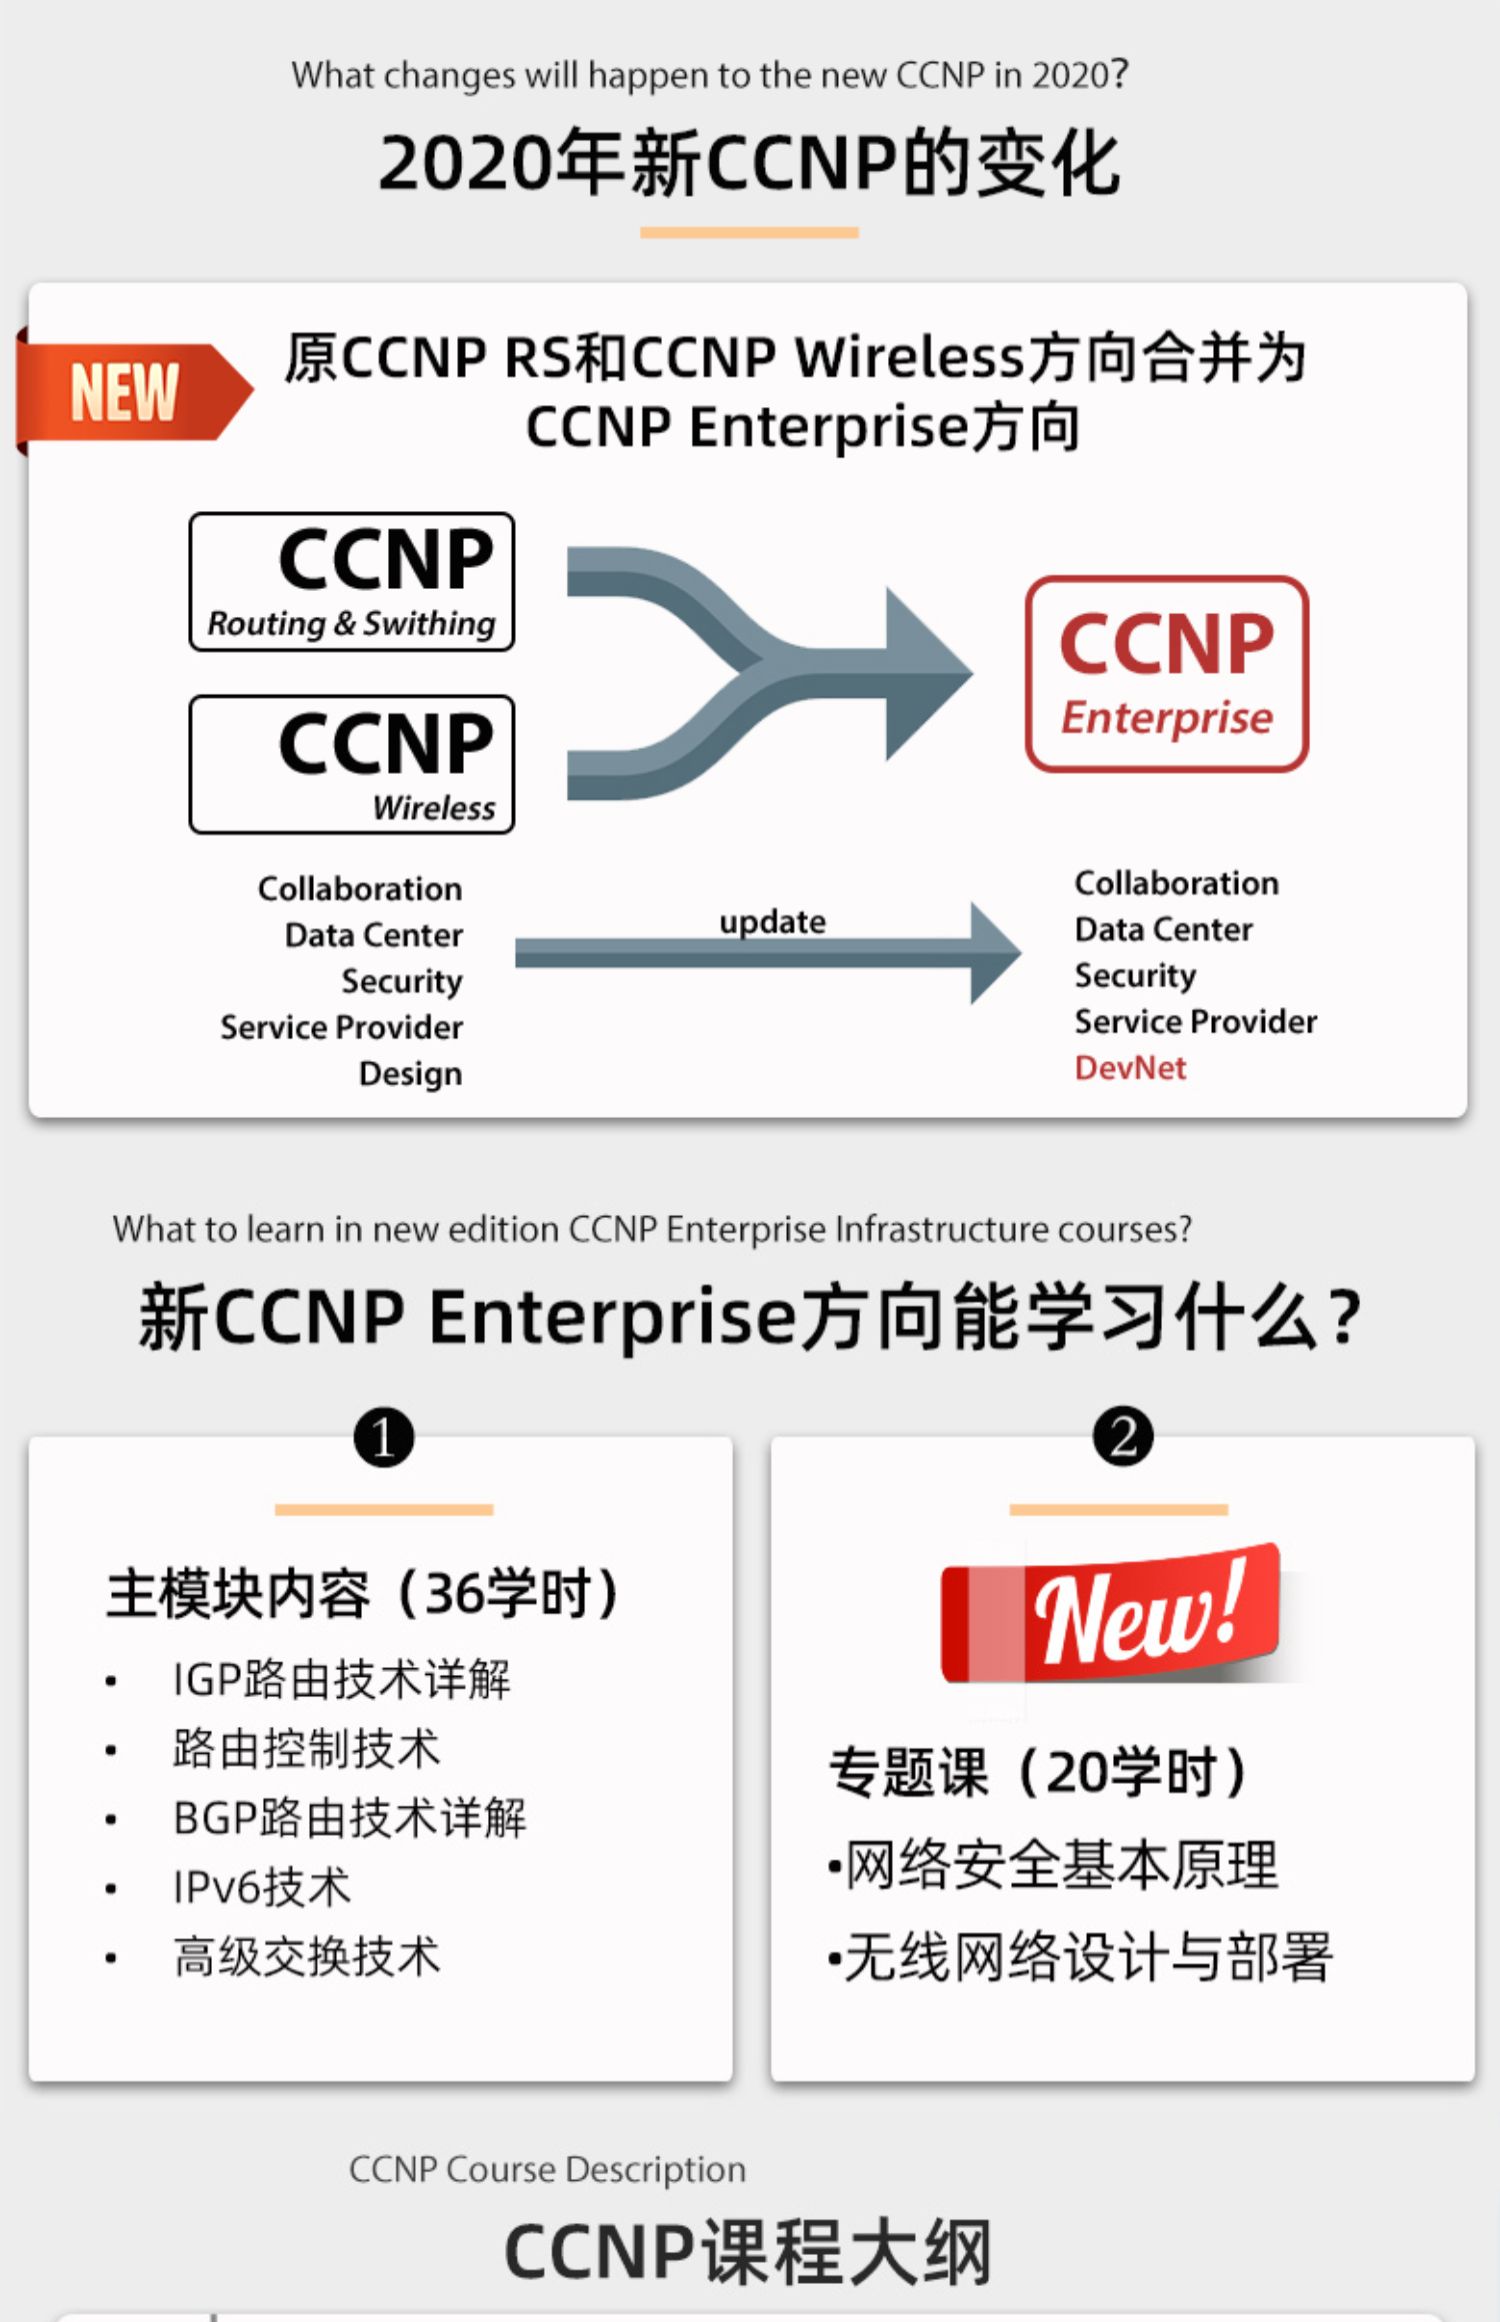 新CCNP Enterprise方向能学习什么?